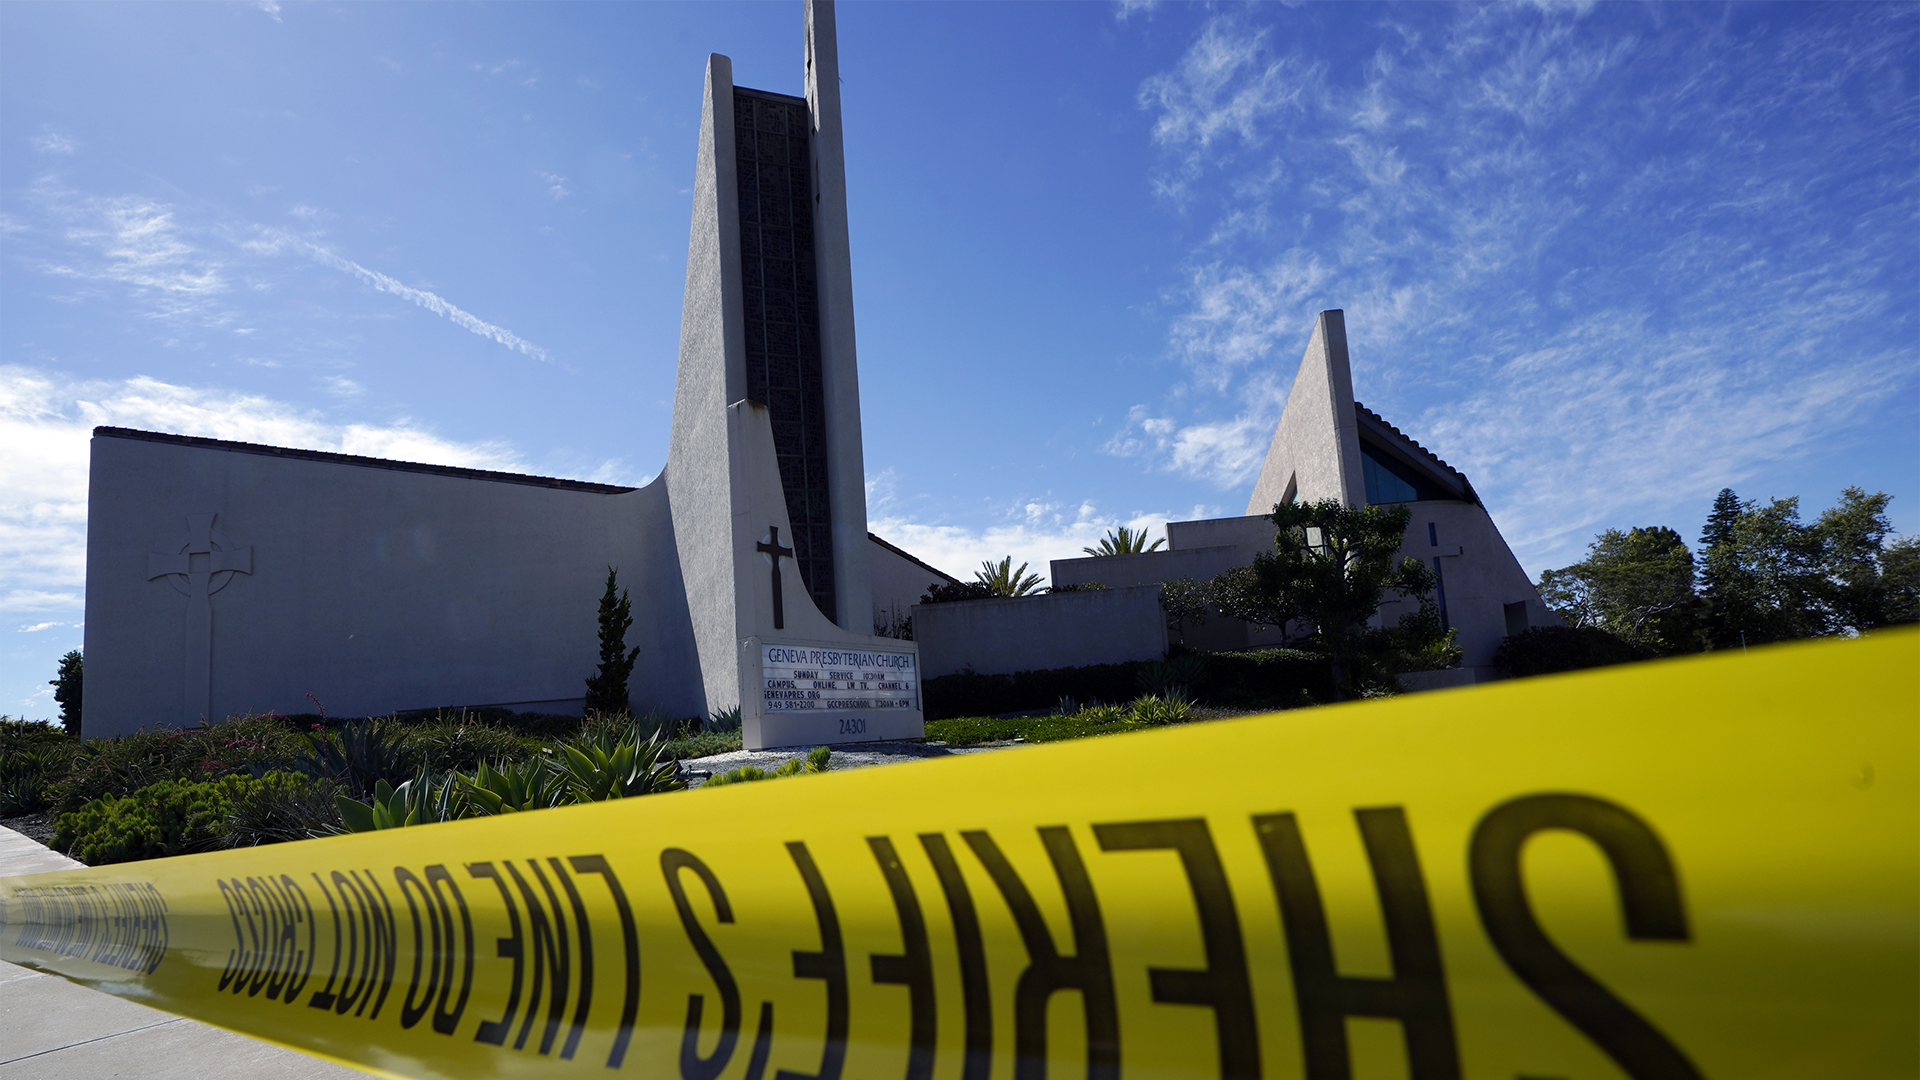 Une personne a été tuée et quatre autres grièvement blessées lors d'une fusillade dimanche après-midi dans une église presbytérienne de Californie, dans une banlieue où la majorité des habitants sont des personnes âgées, selon des responsables.